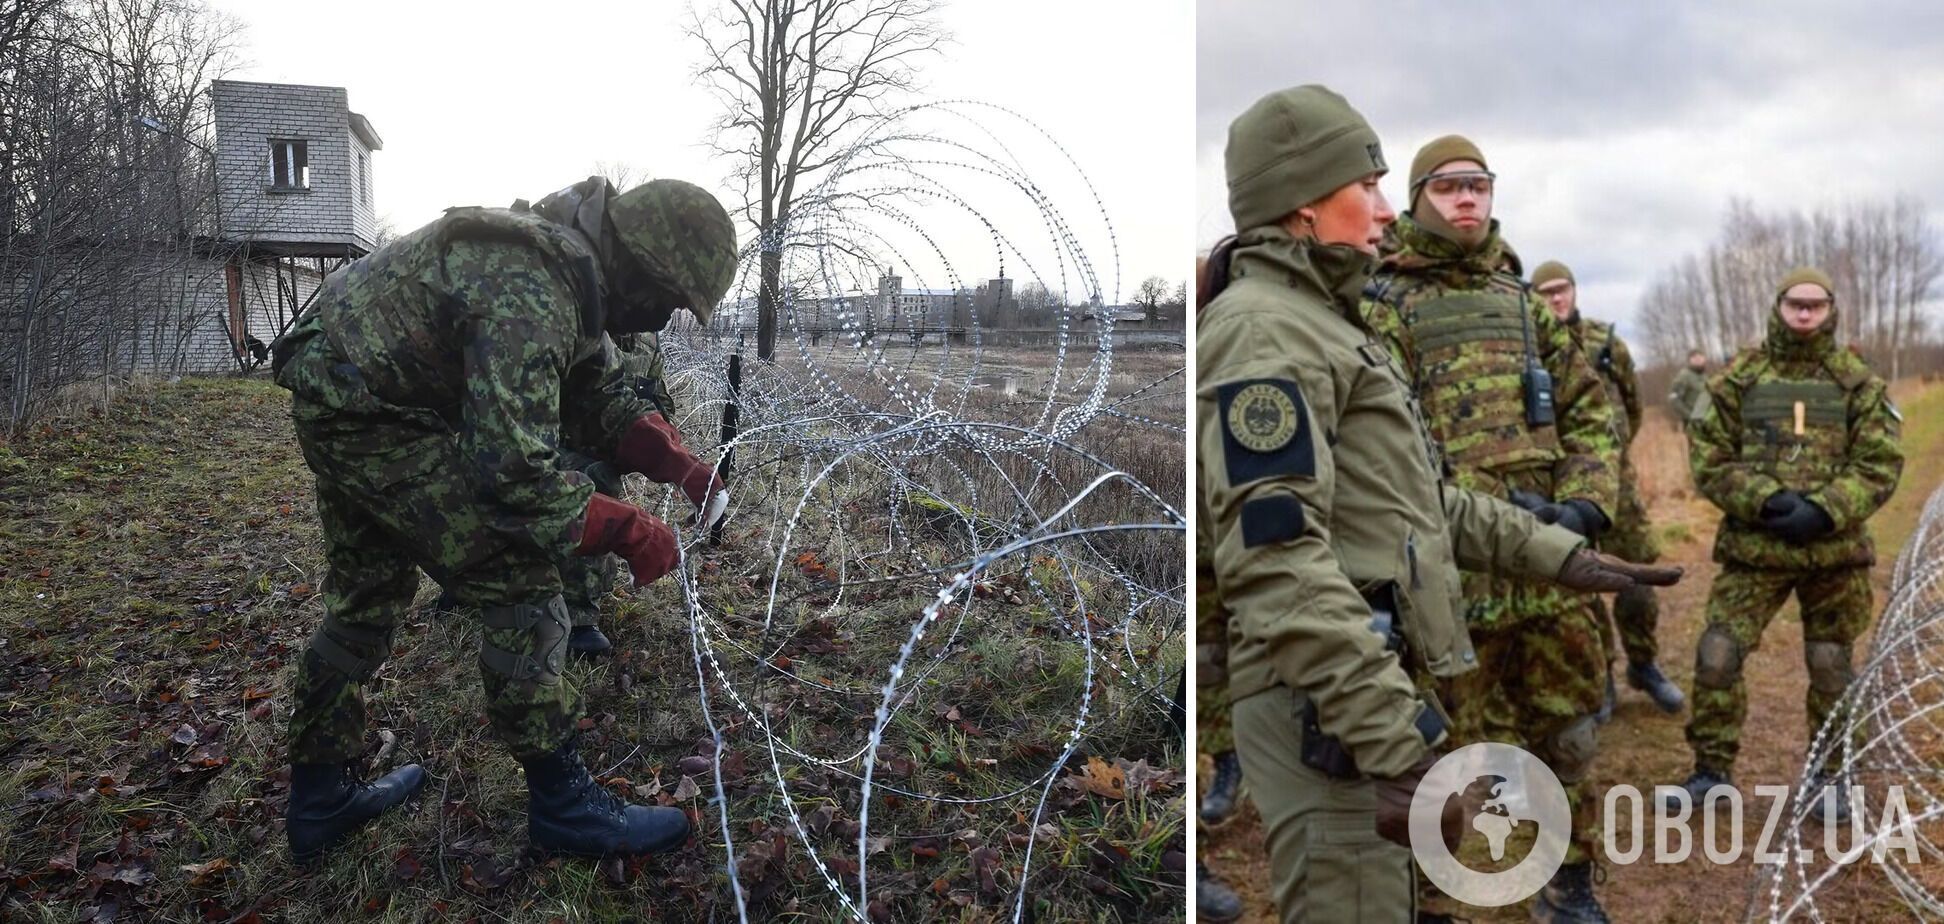 Работами занимаются эстонские Силы обороны, полицейские и пограничники